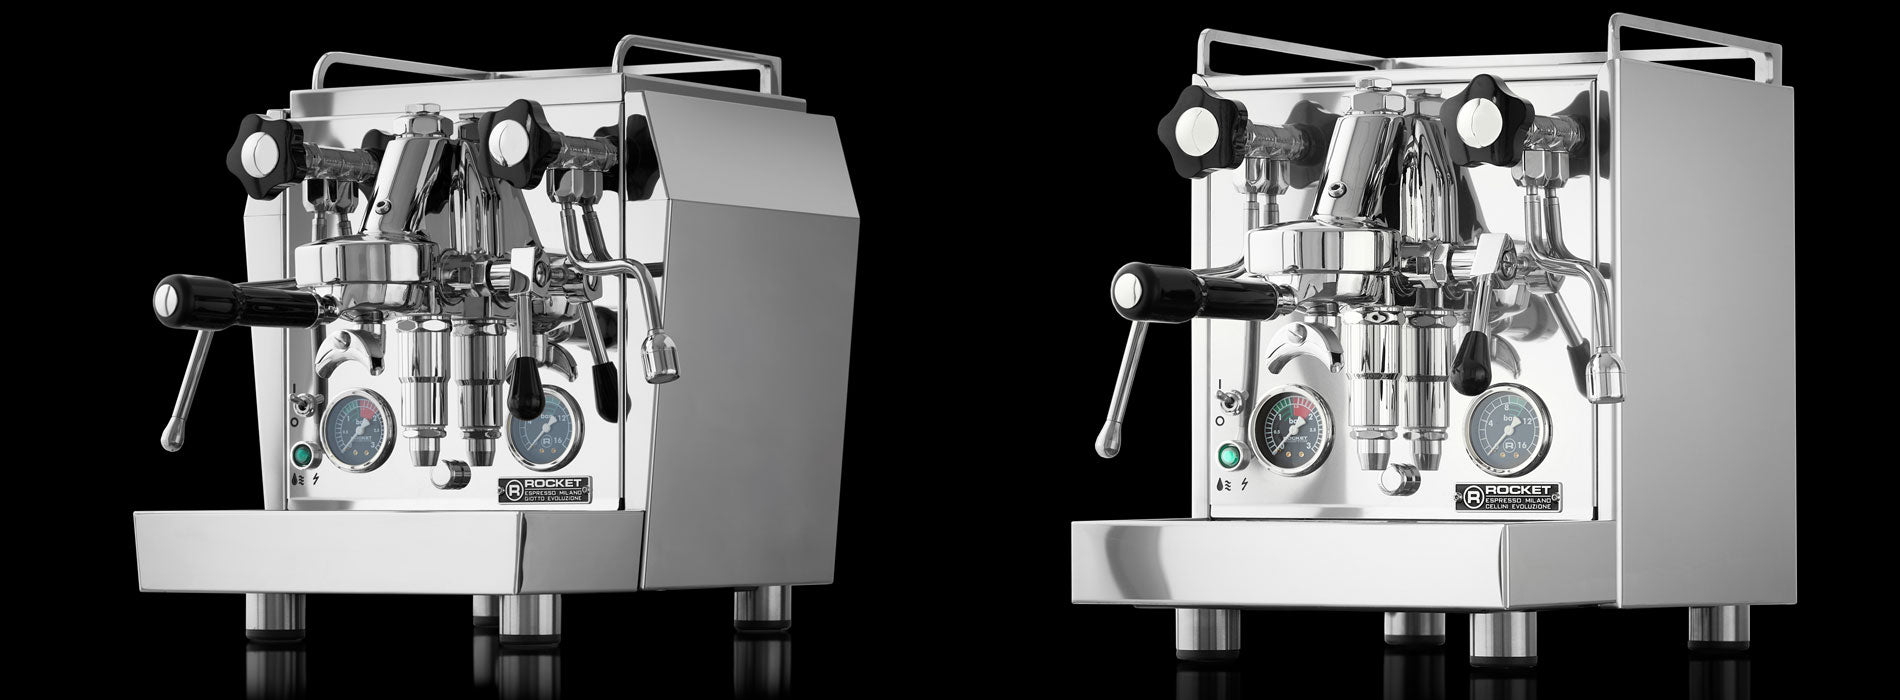 The Rocket Espresso Evoluzione V2 – Whole Latte Love